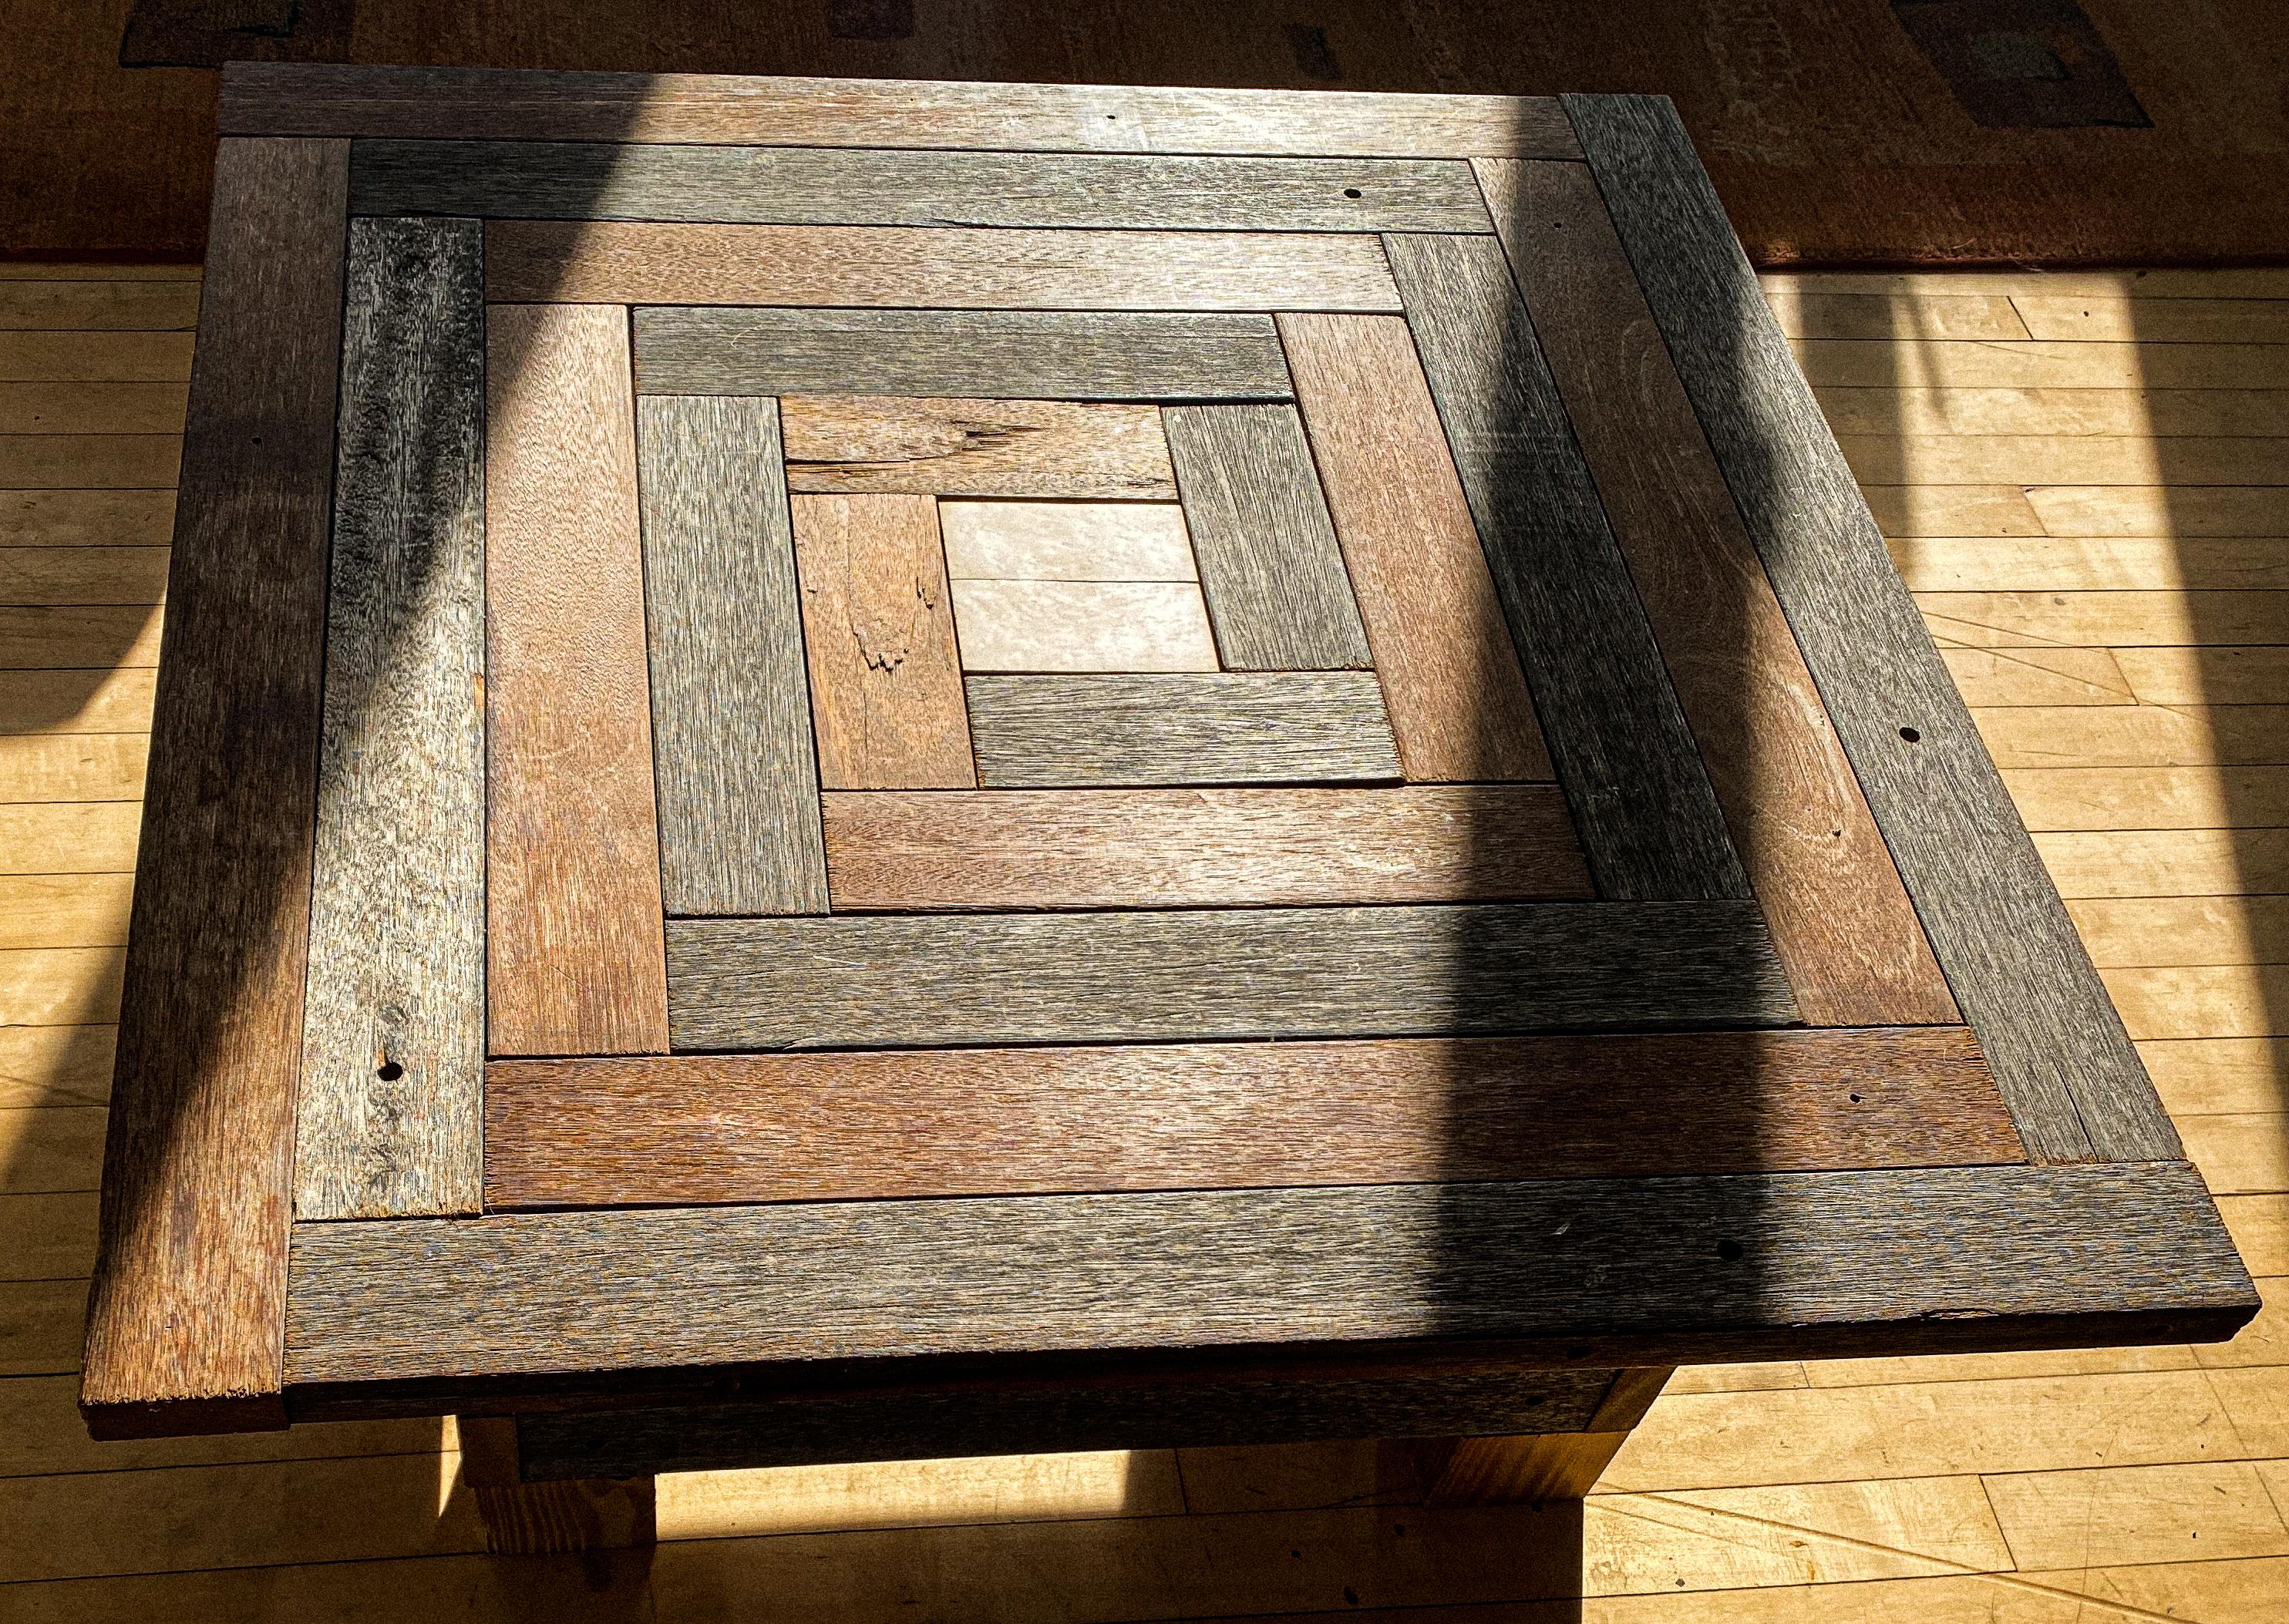 Der Couchtisch im Labyrinth-Muster besteht aus einer Mischung von verwitterten und neuen Hartholzstreifen mit einem Mittelquadrat aus Vogelaugenahorn.
Er ist der perfekte rustikale Couchtisch im Arts & Crafts-Stil. Ein Blickfang in jedem Raum.